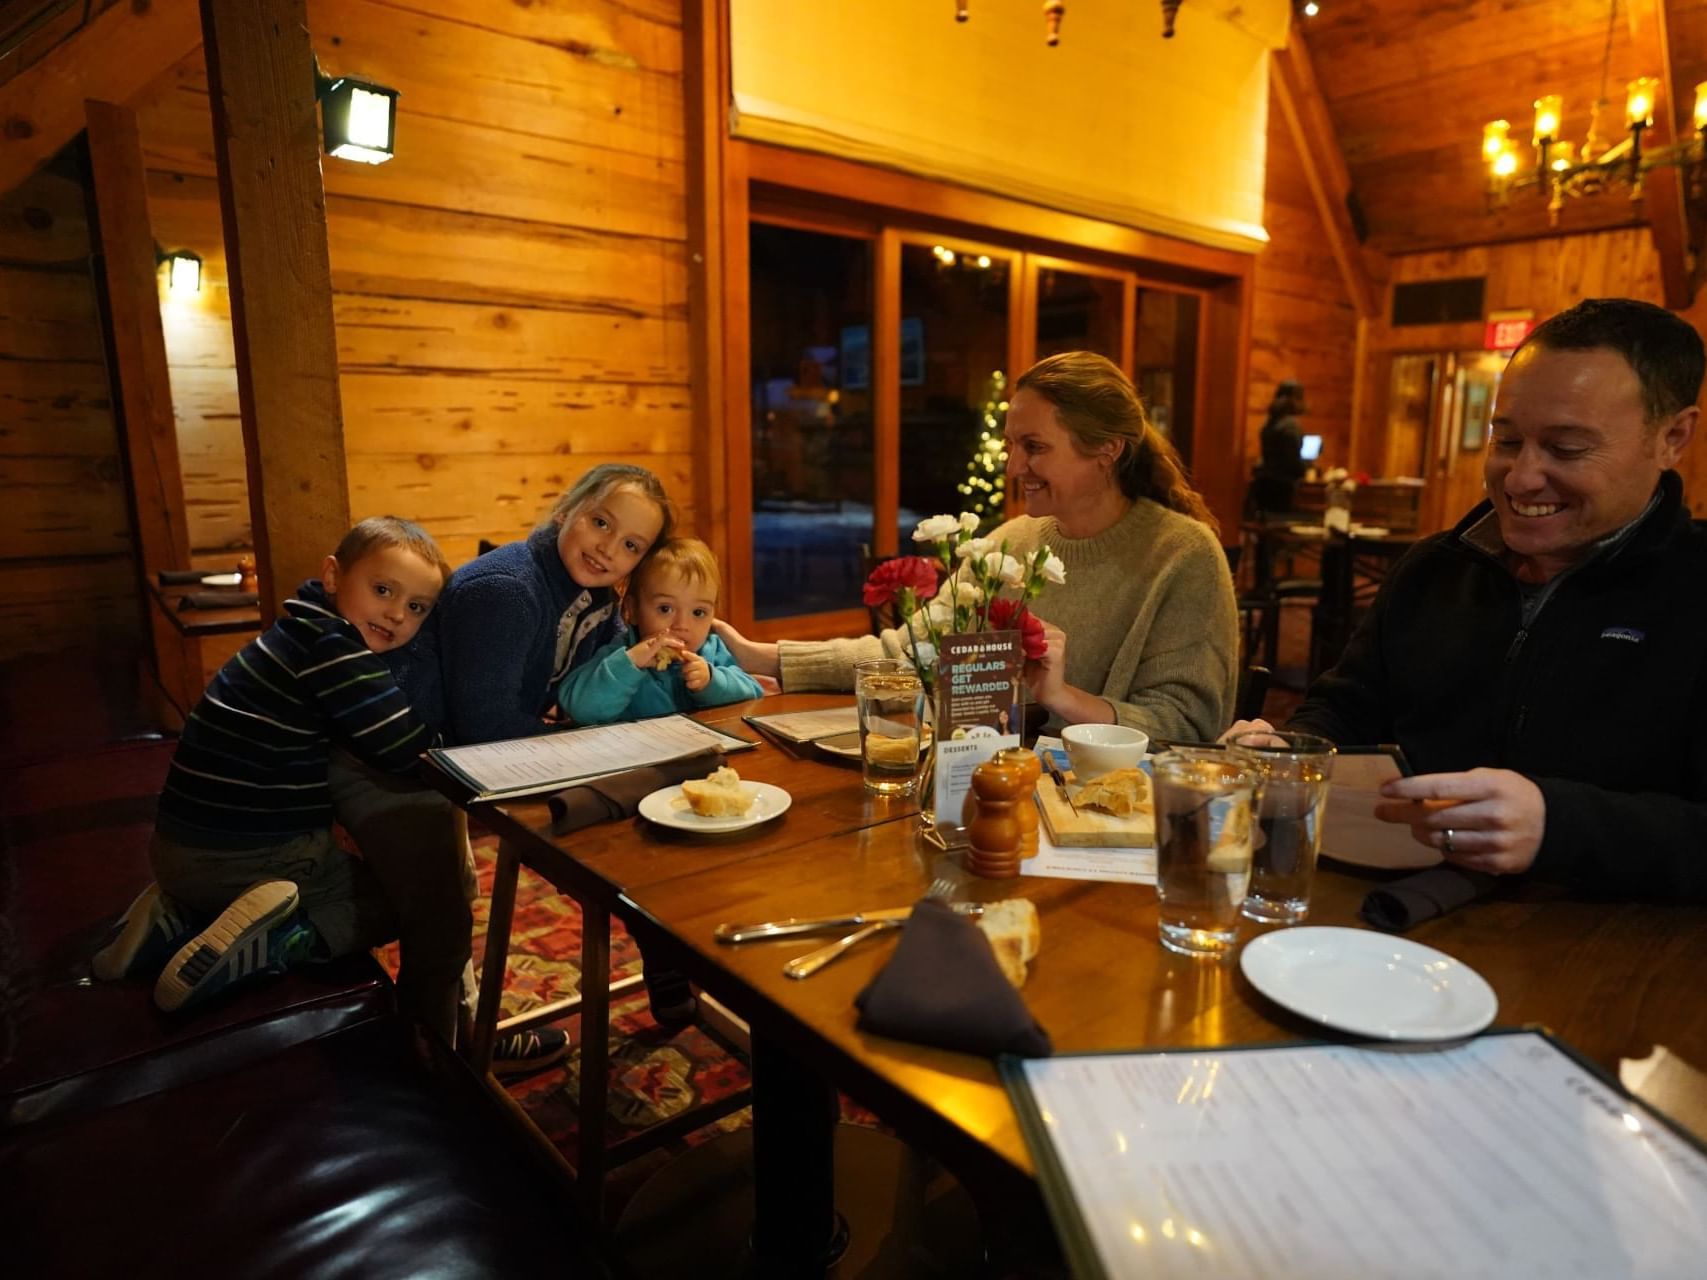 Family enjoying dinner at Granlibakken's Cedar House Pub